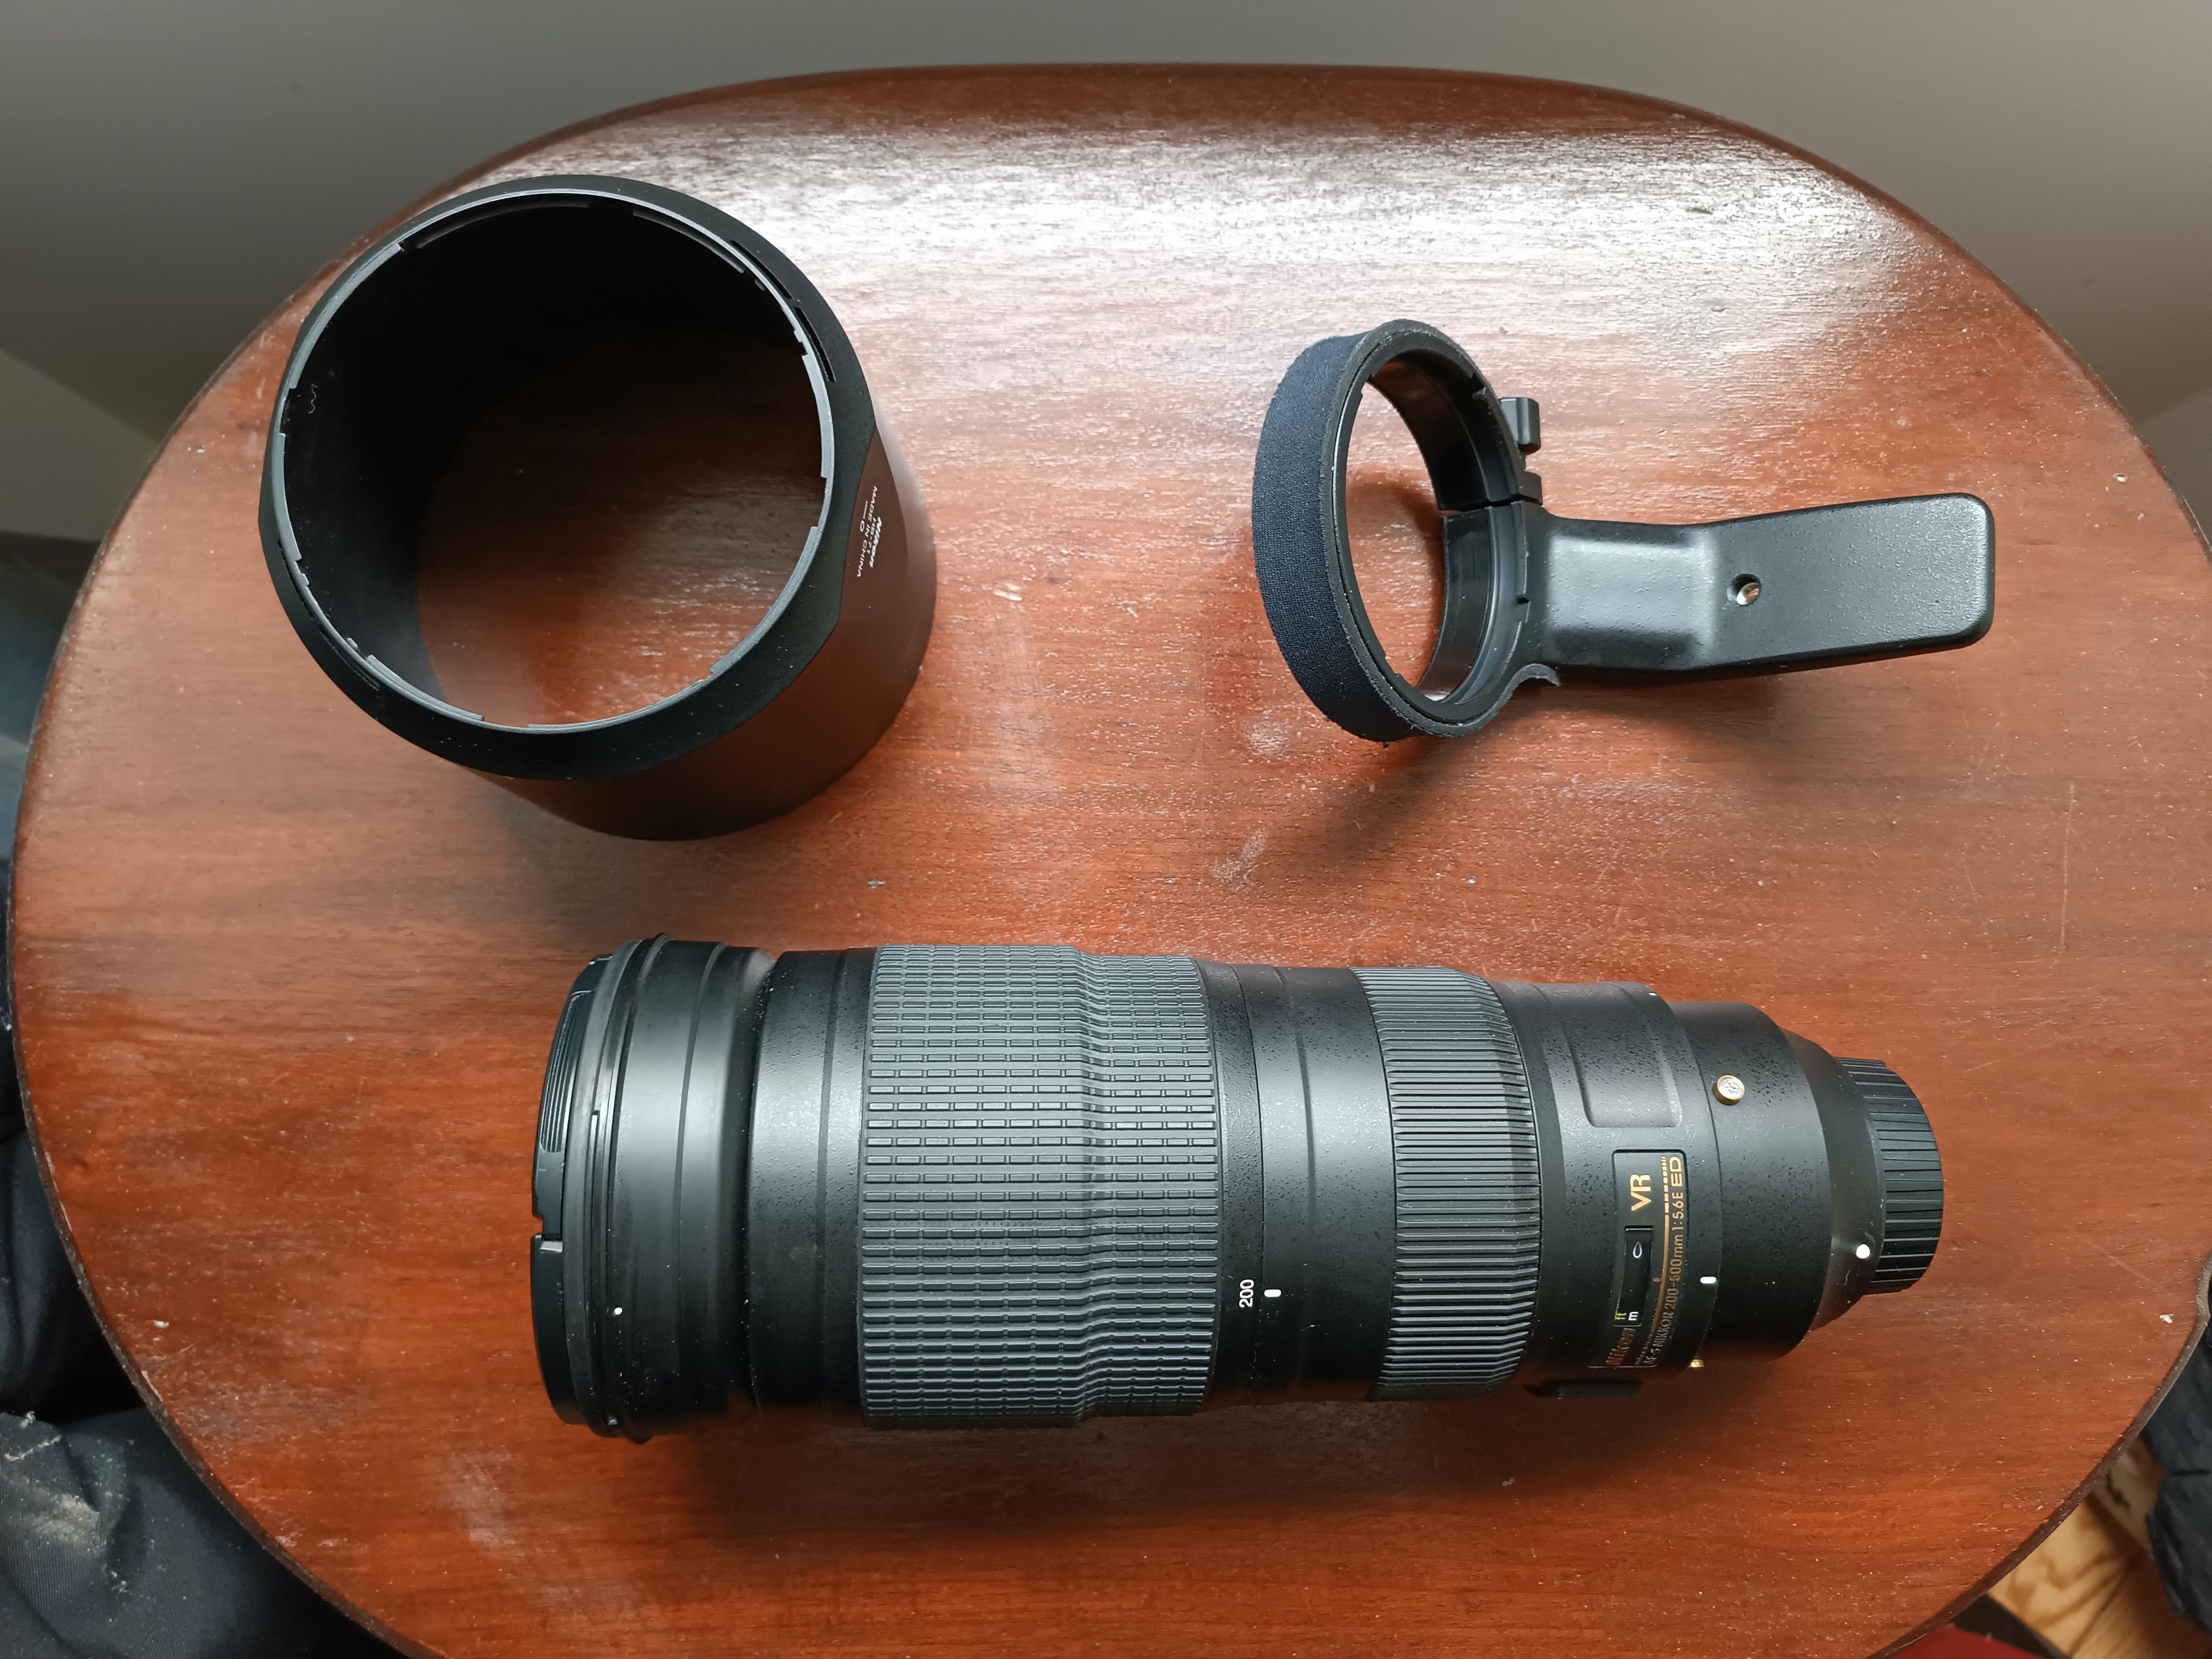 Nikon AF-S NIKKOR 200-500mm f/5.6E ED VR